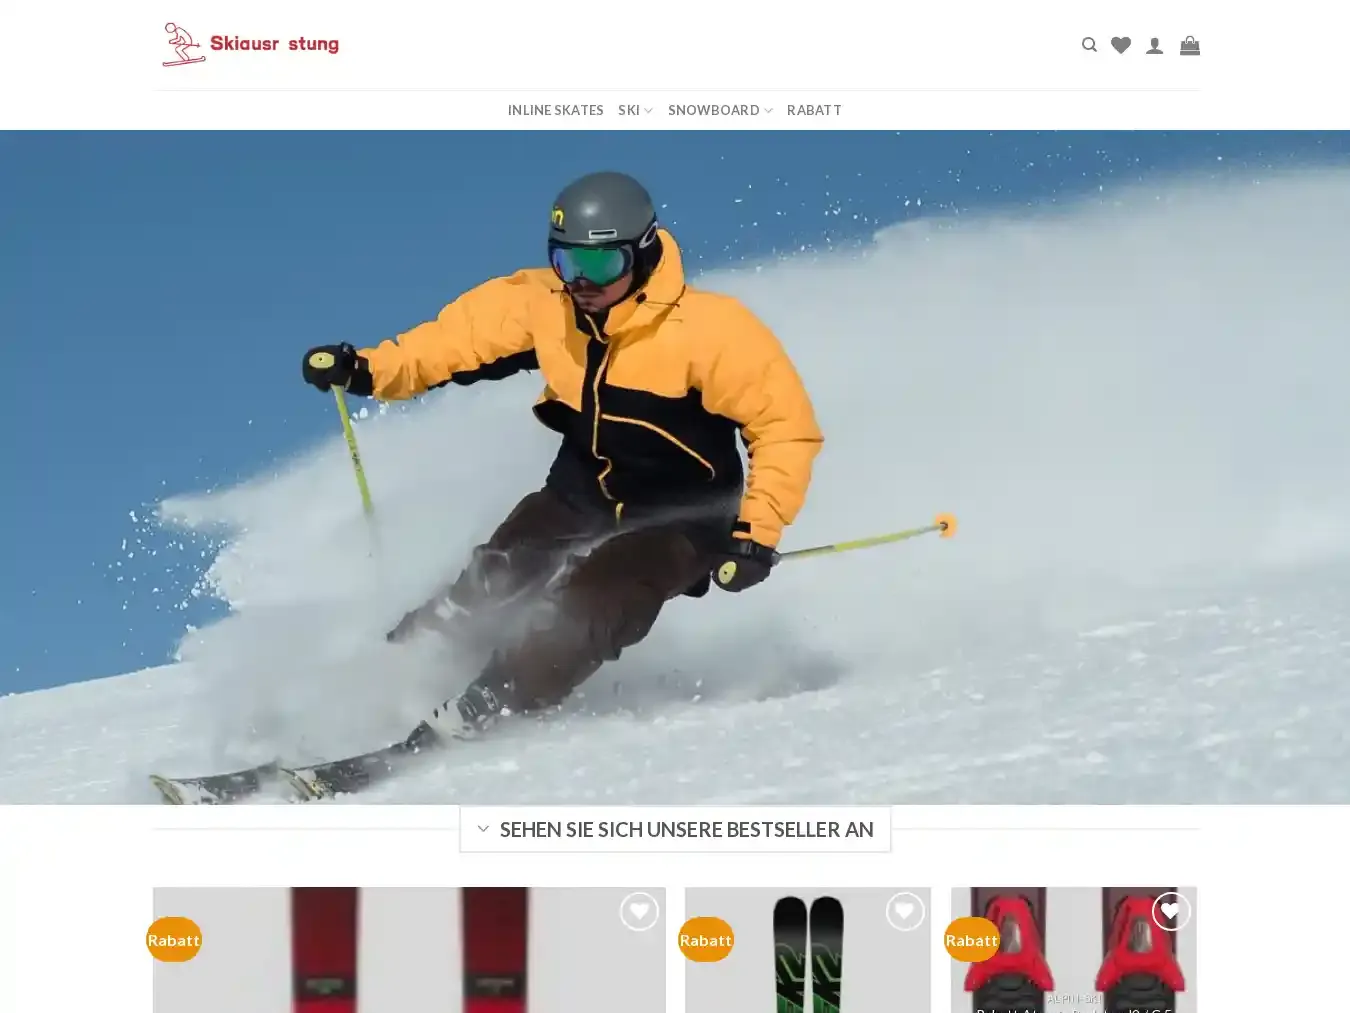 Skipreisnachlass.com Fraudulent Sport website.